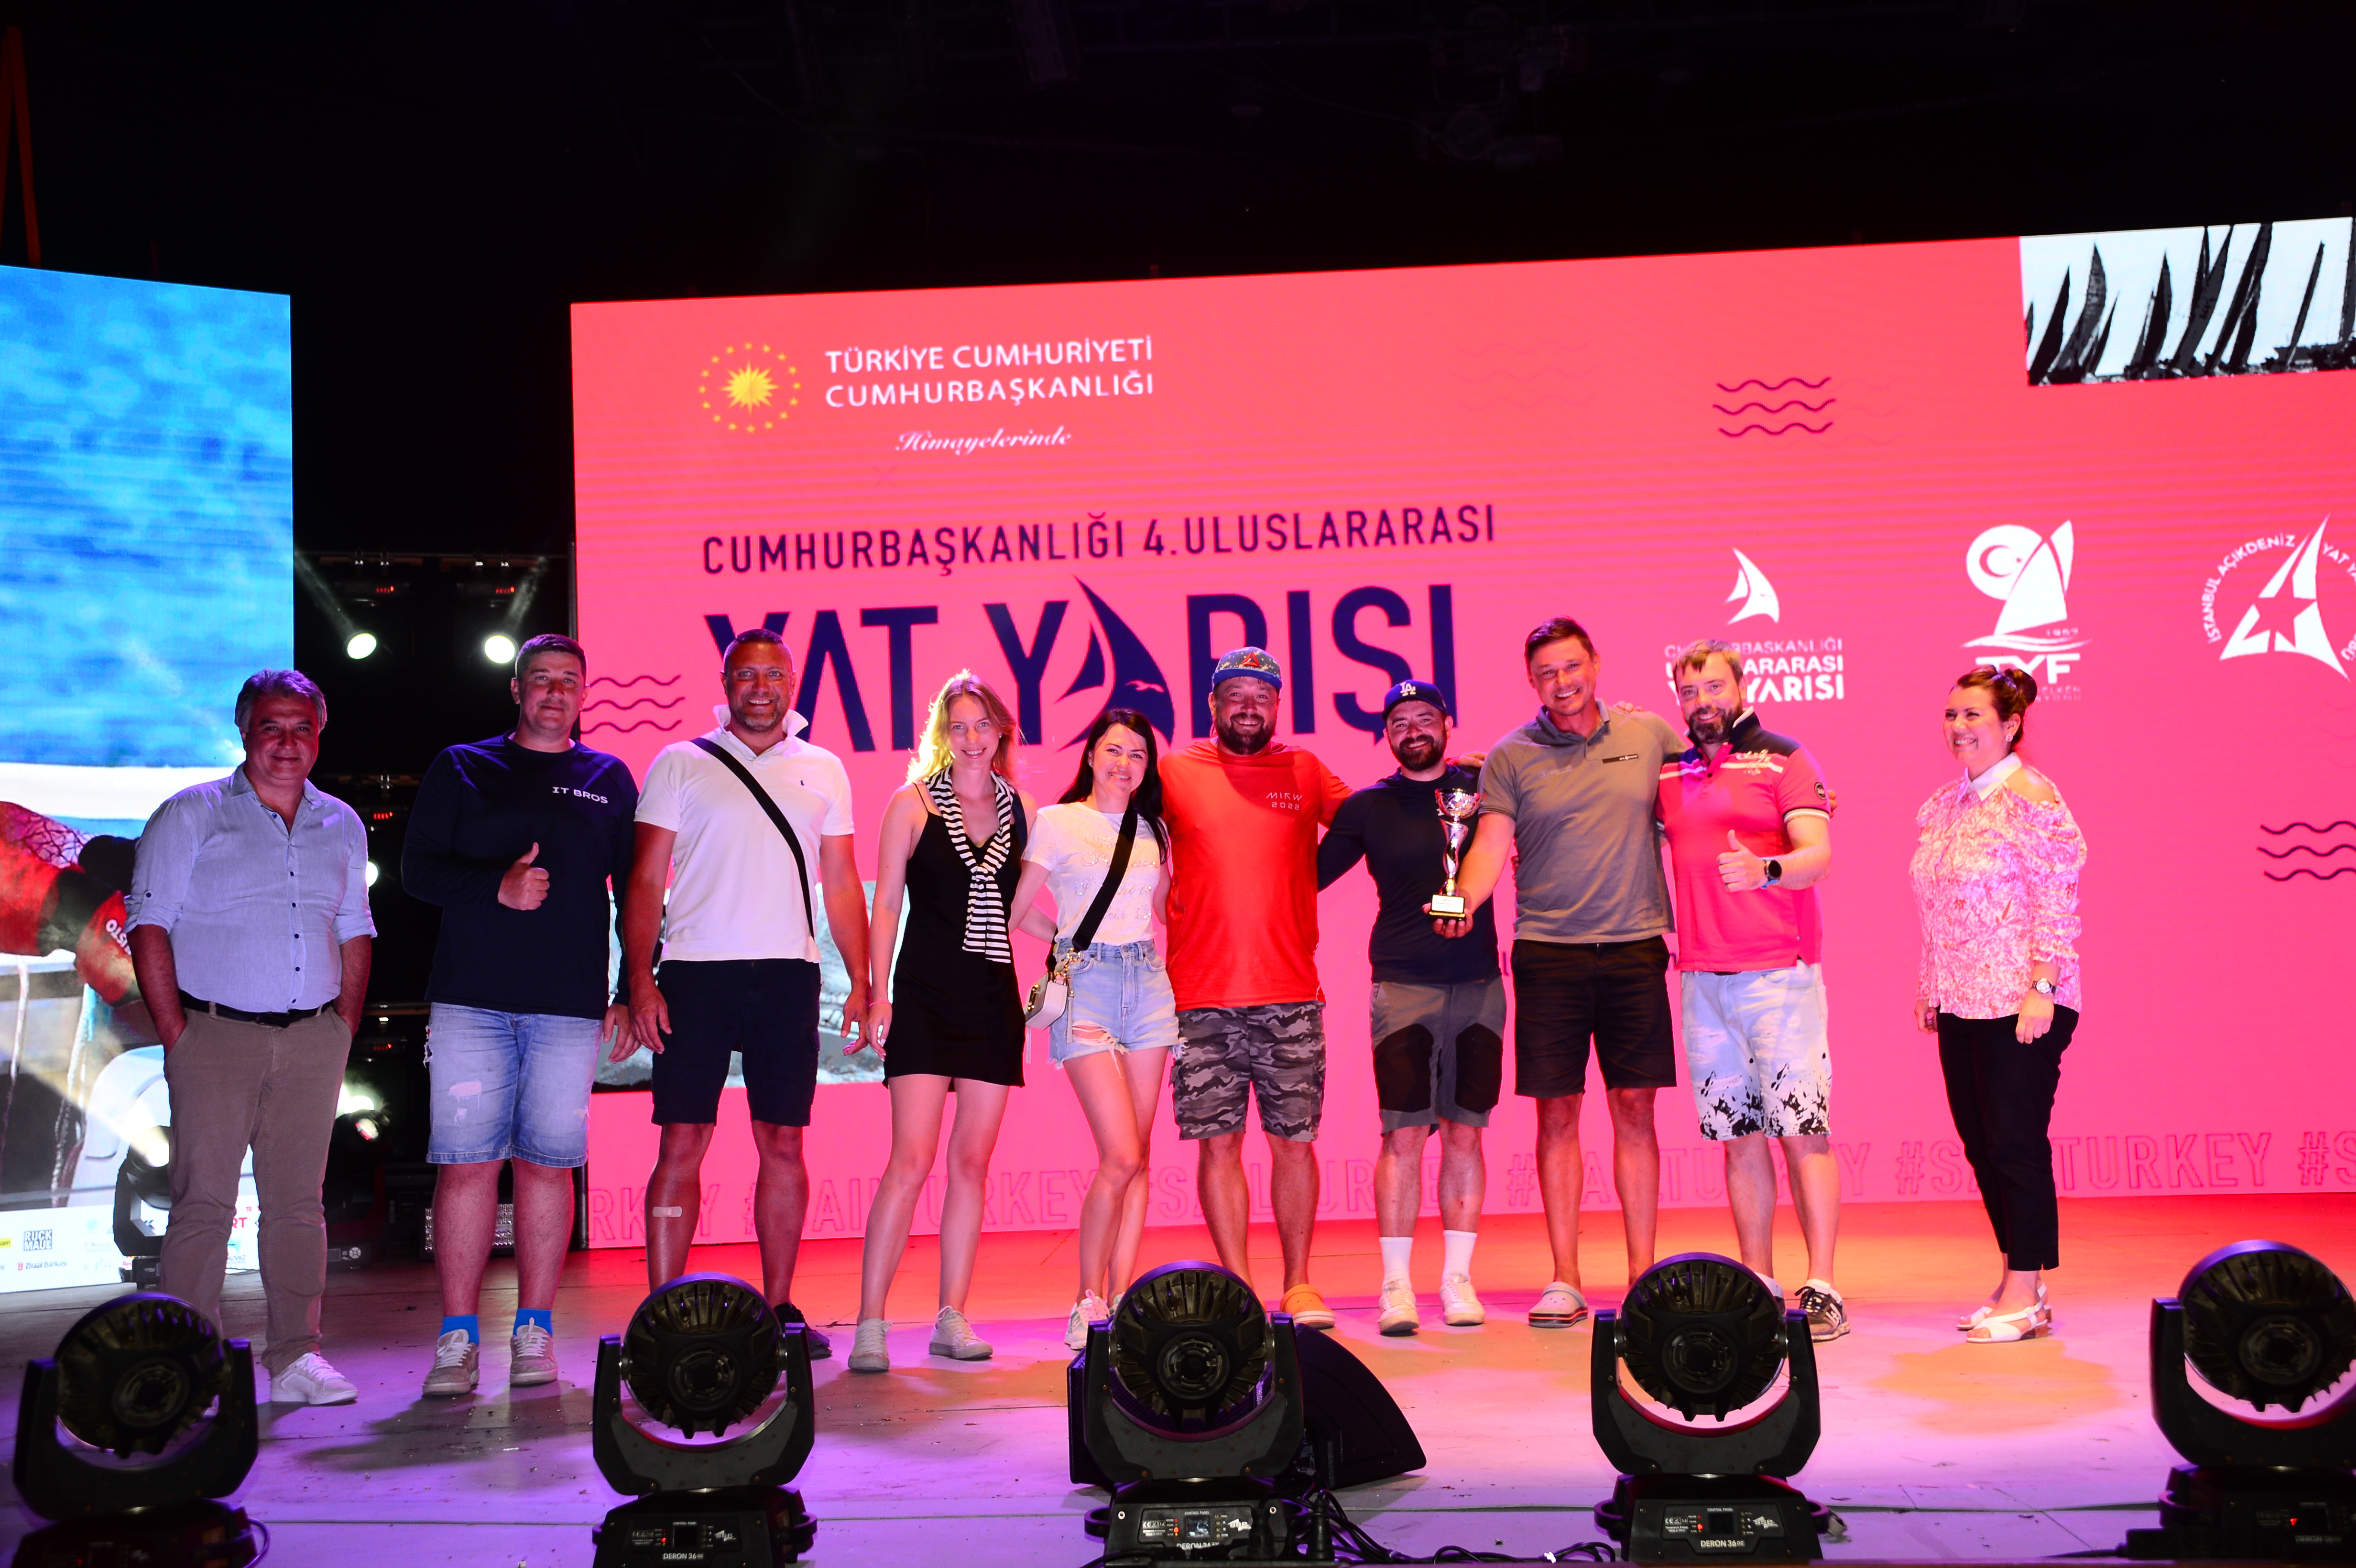 Cumhurbaşkanlığı Uluslararası Yat Yarışı Halikarnas 100. Yıl Kupası Sona Erdi